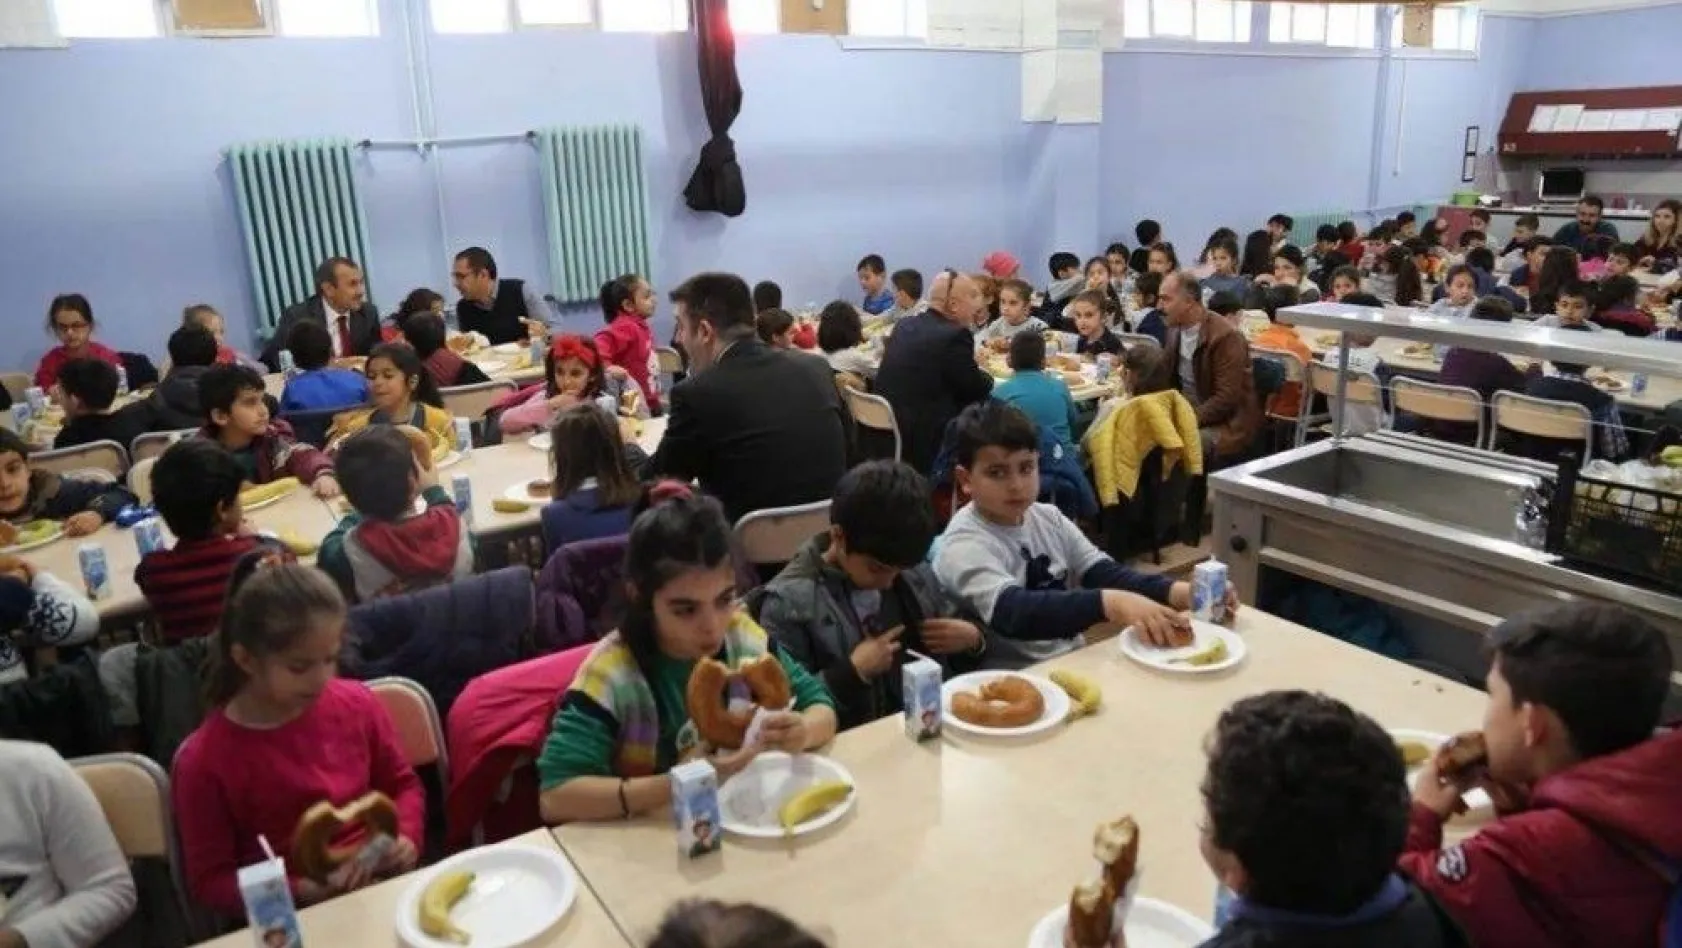 Vali Sonel'den 332 öğrenciye kahvaltı desteği
